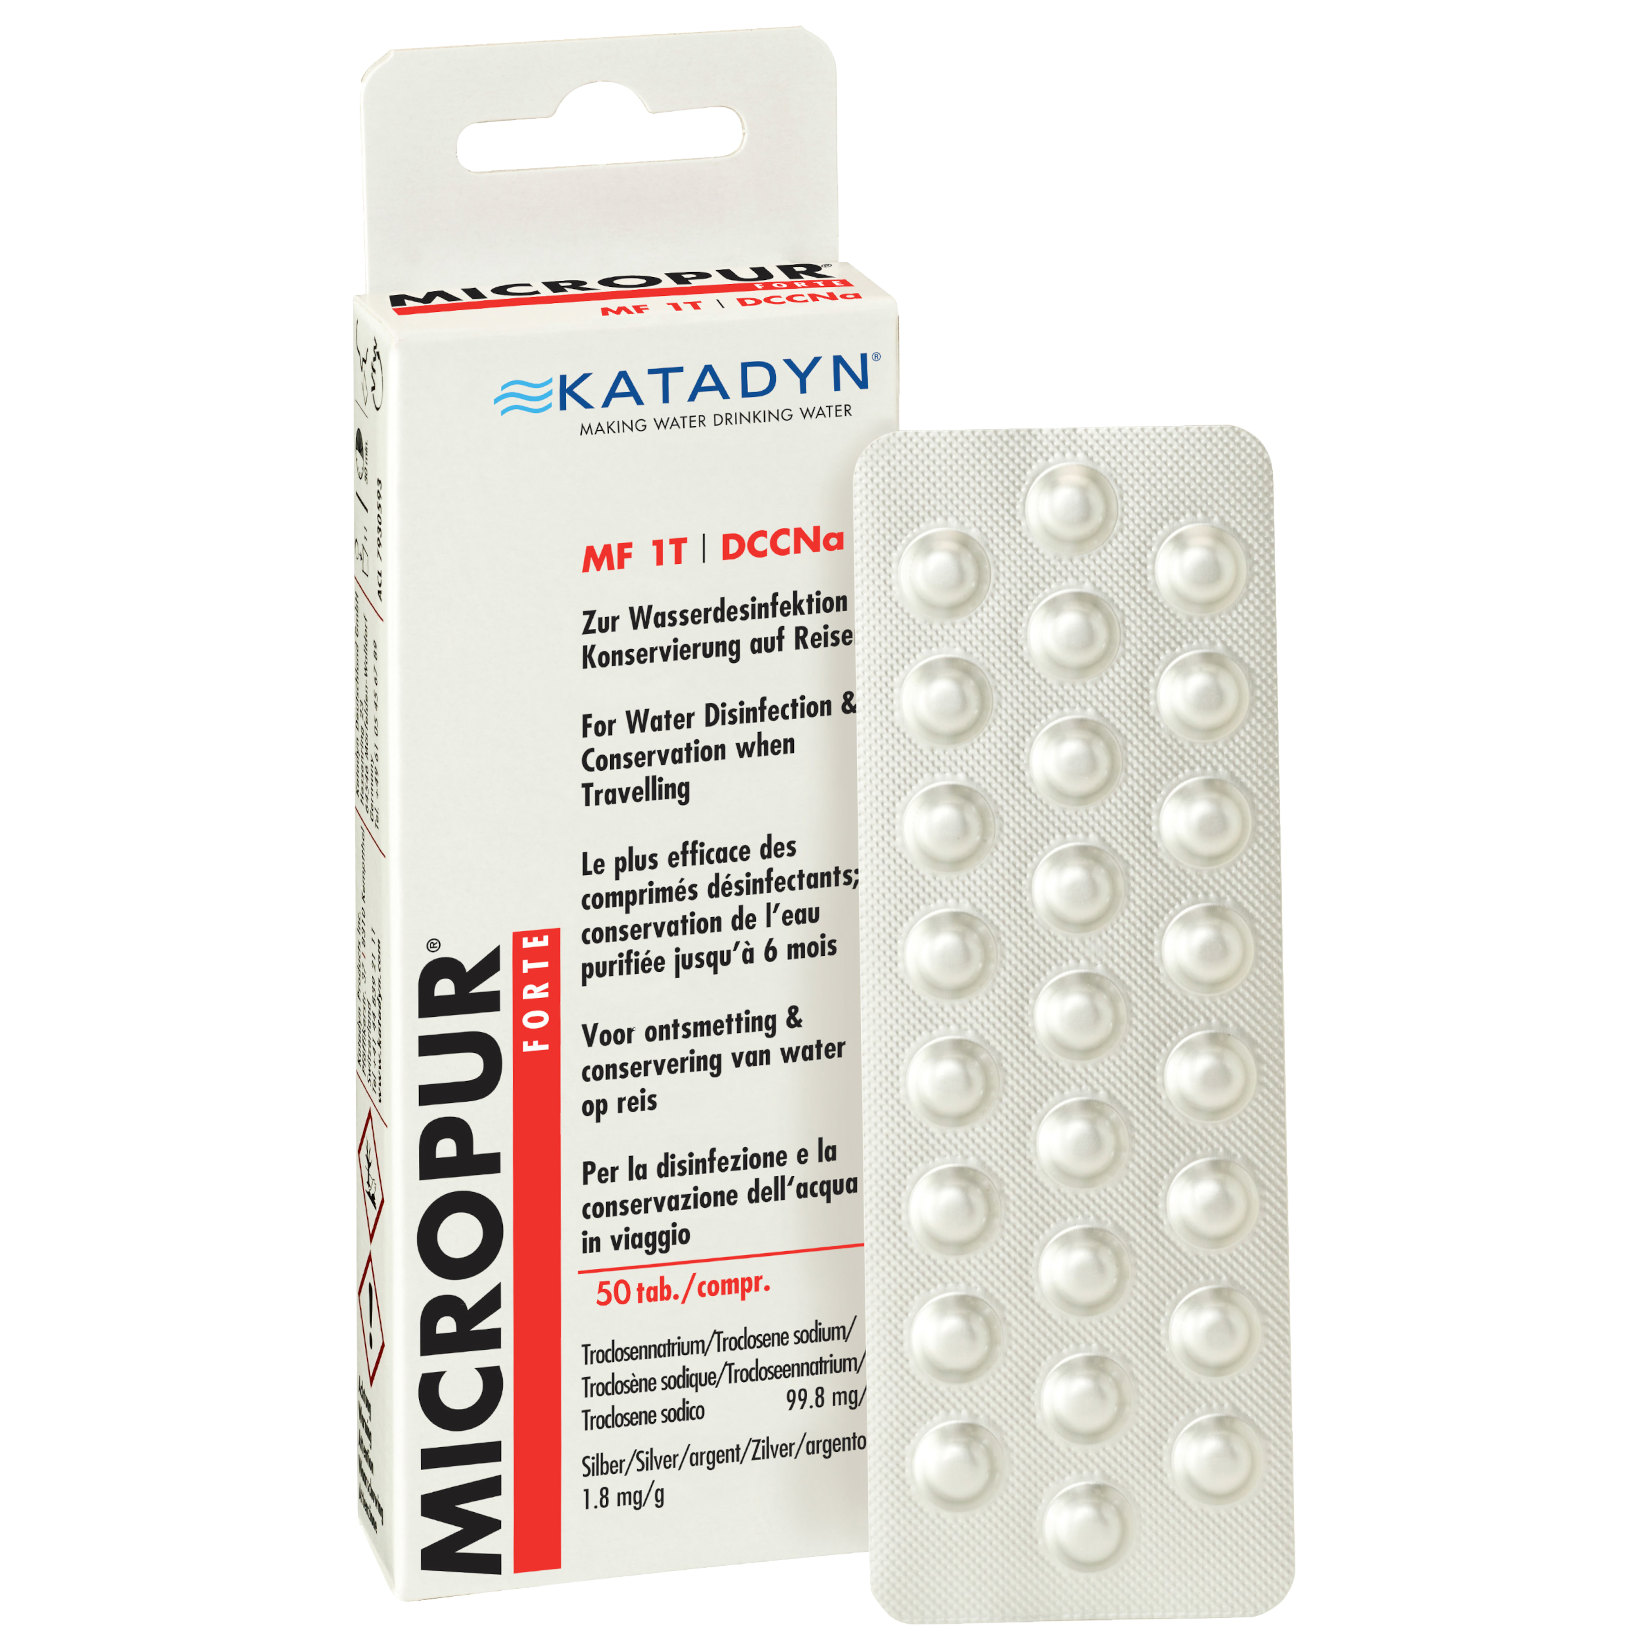 Produktbild von Katadyn Micropur Forte MF 1T Wasserdesinfektion - 50 Tabletten